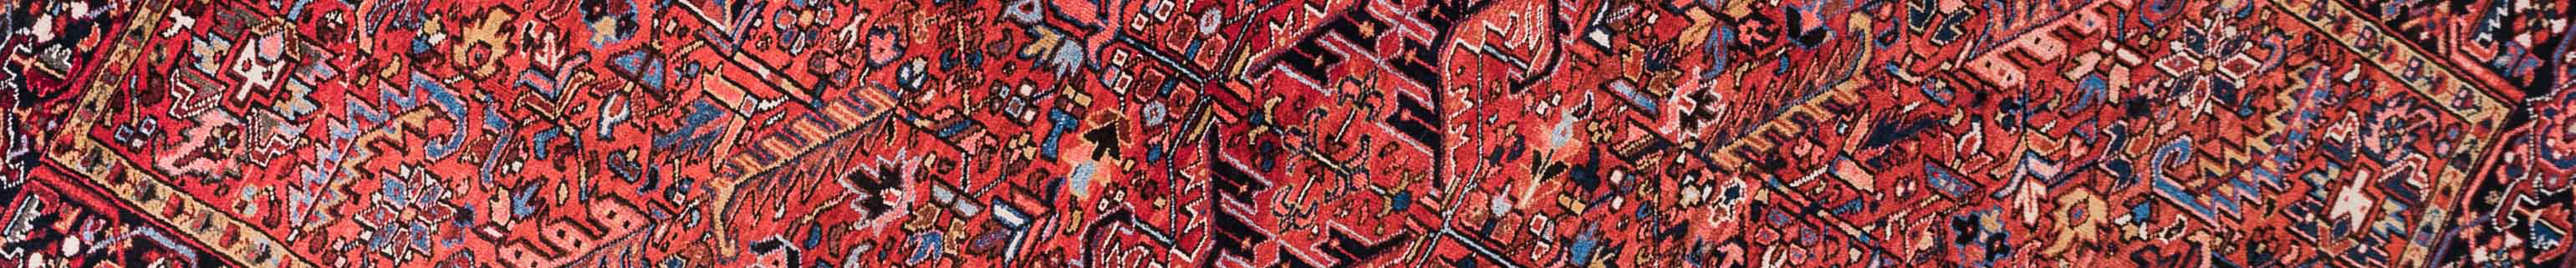 Gravan Persian Carpet Rug N1Carpet Canada Montreal Tapis Persan 3400